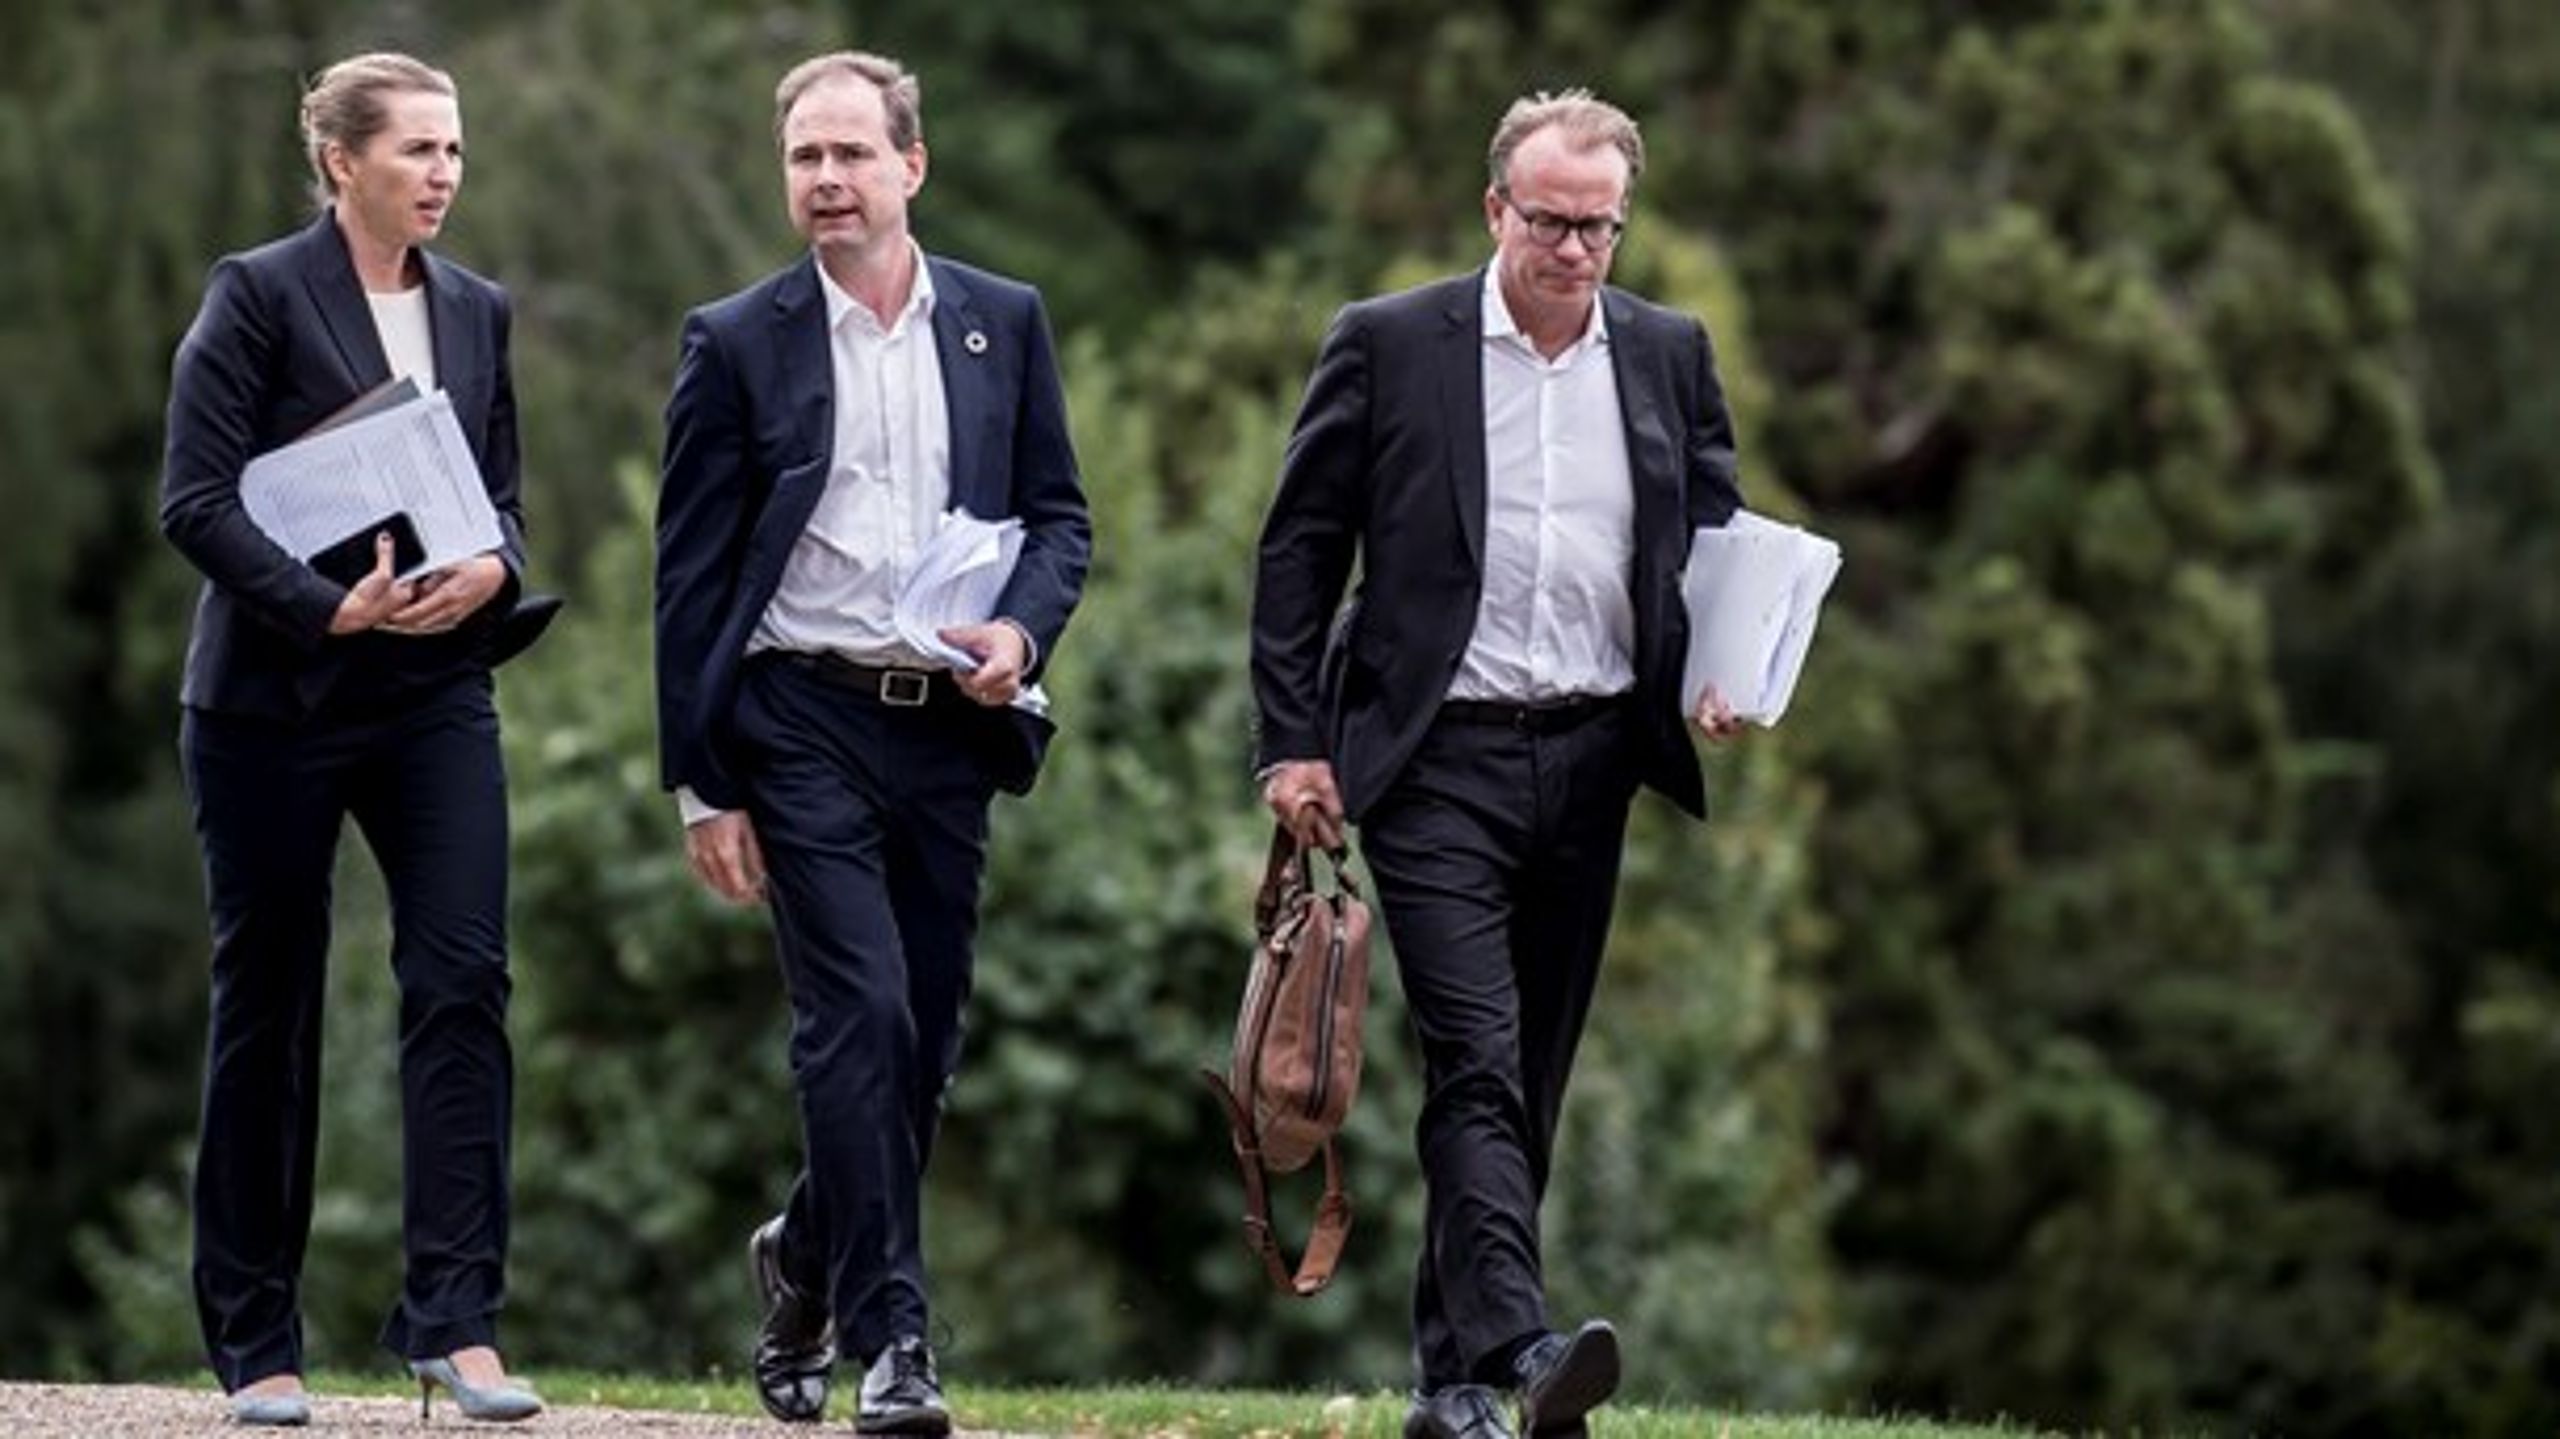 S-ordfører Rasmus Stoklund glider hen over kritikken af, at statsministerens særlige rådgiver Martin Rossen ikke er folkevalgt, men sidder i ministerudvalg, skriver radikal.